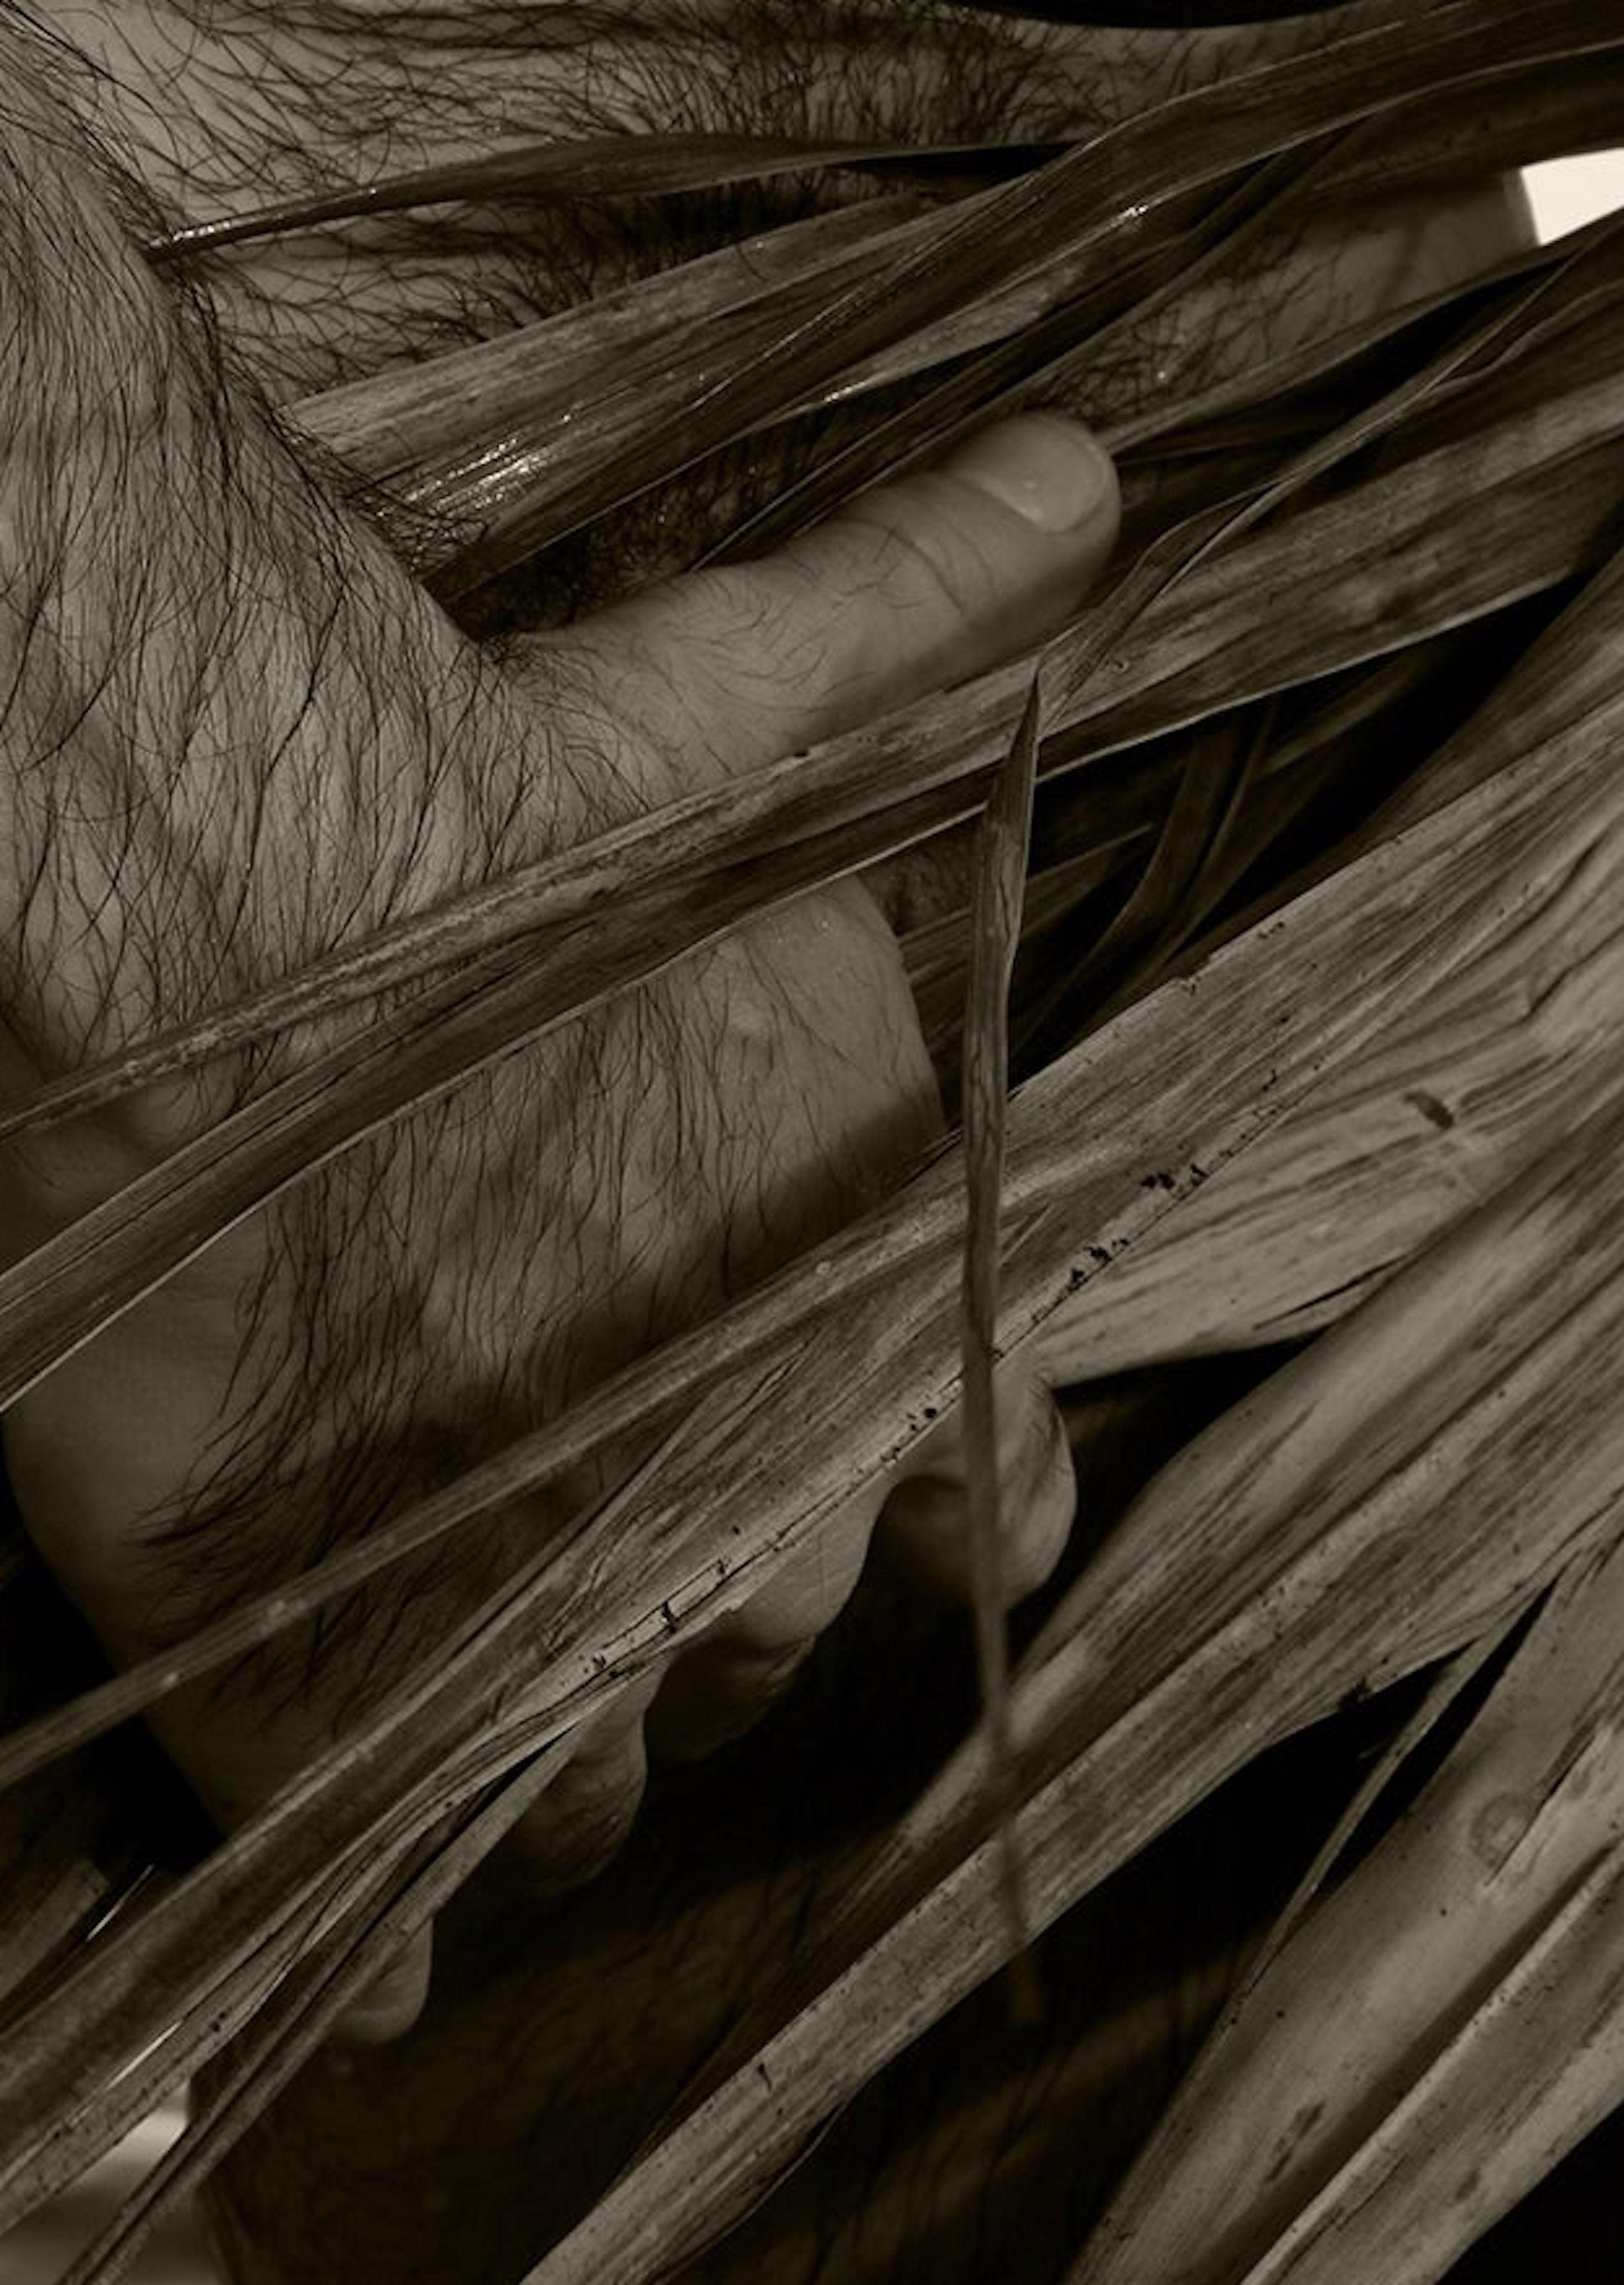 Sepia Farbe  Archivalischer Pigmentdruck
Medium Ed von 10.

Palmen und Bäume: Für diese Serie erforscht der Künstler kurze Gedichte, die Ausdehnung der Palmen, Texturen und die Leichtigkeit der männlichen Figur, umgeben von Meer und Himmel. Er fügte